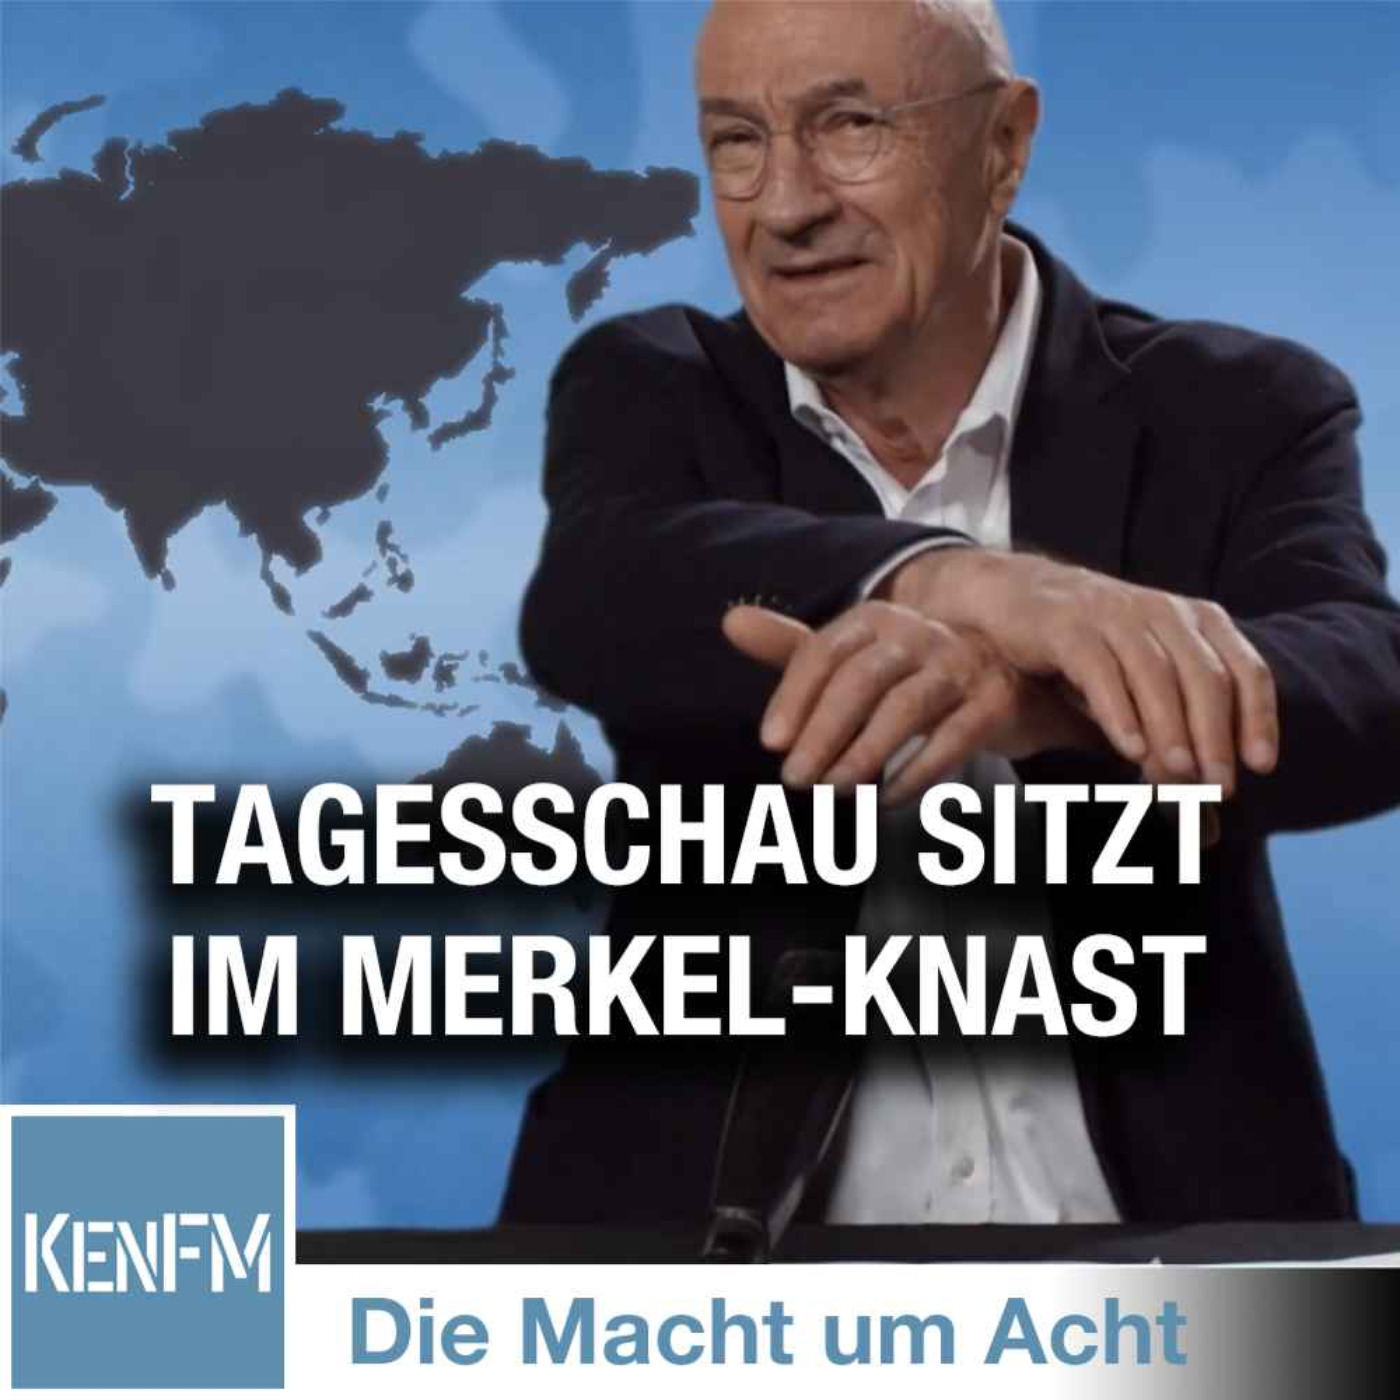 Die Macht um Acht (78) „Tagesschau sitzt im Merkel-Knast“